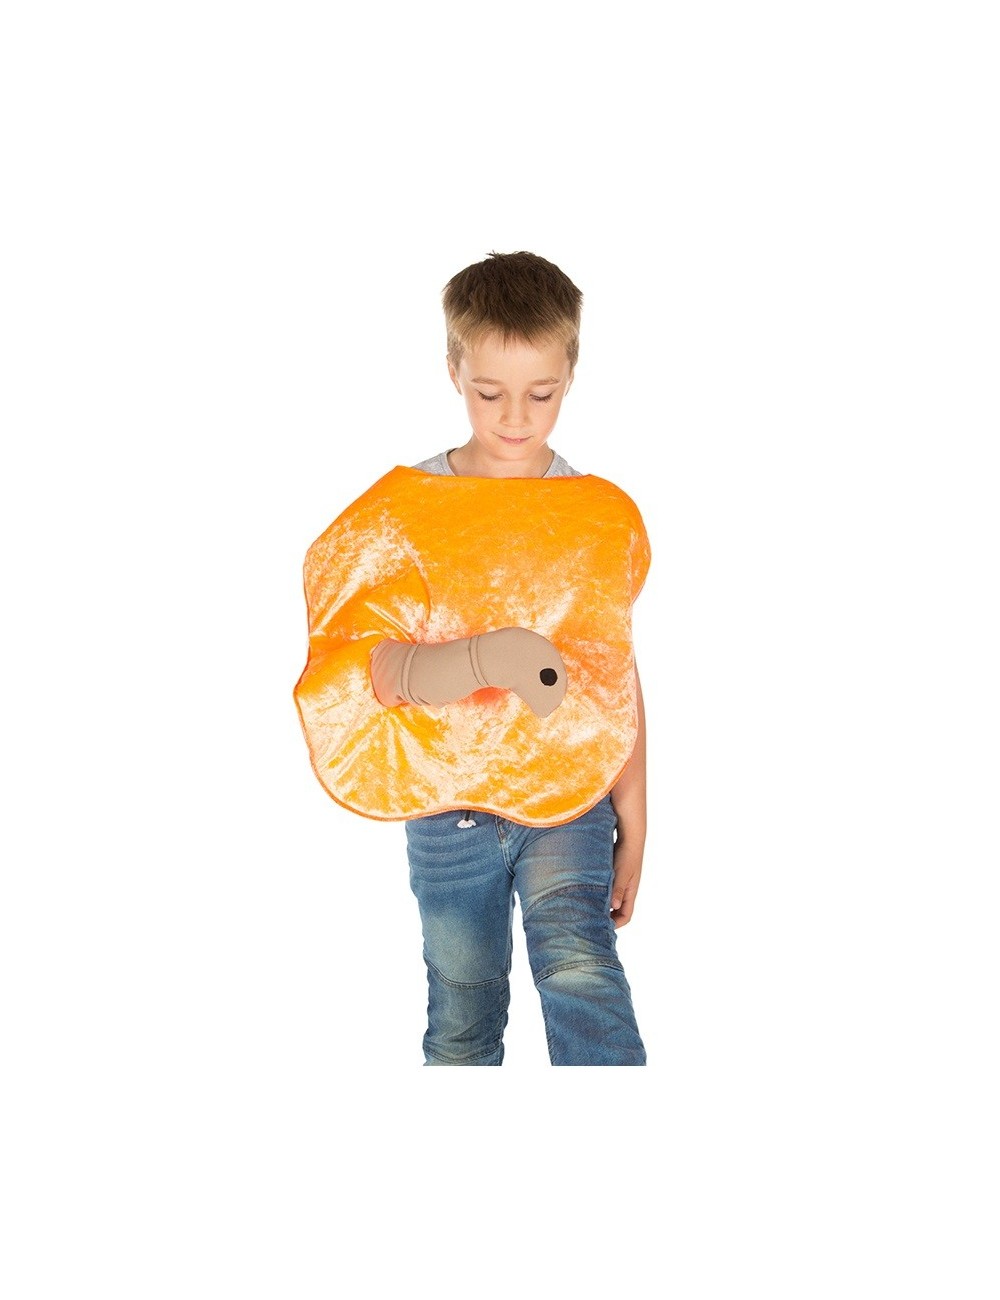 Costum Piersica uriasa, copii 3-7 ani